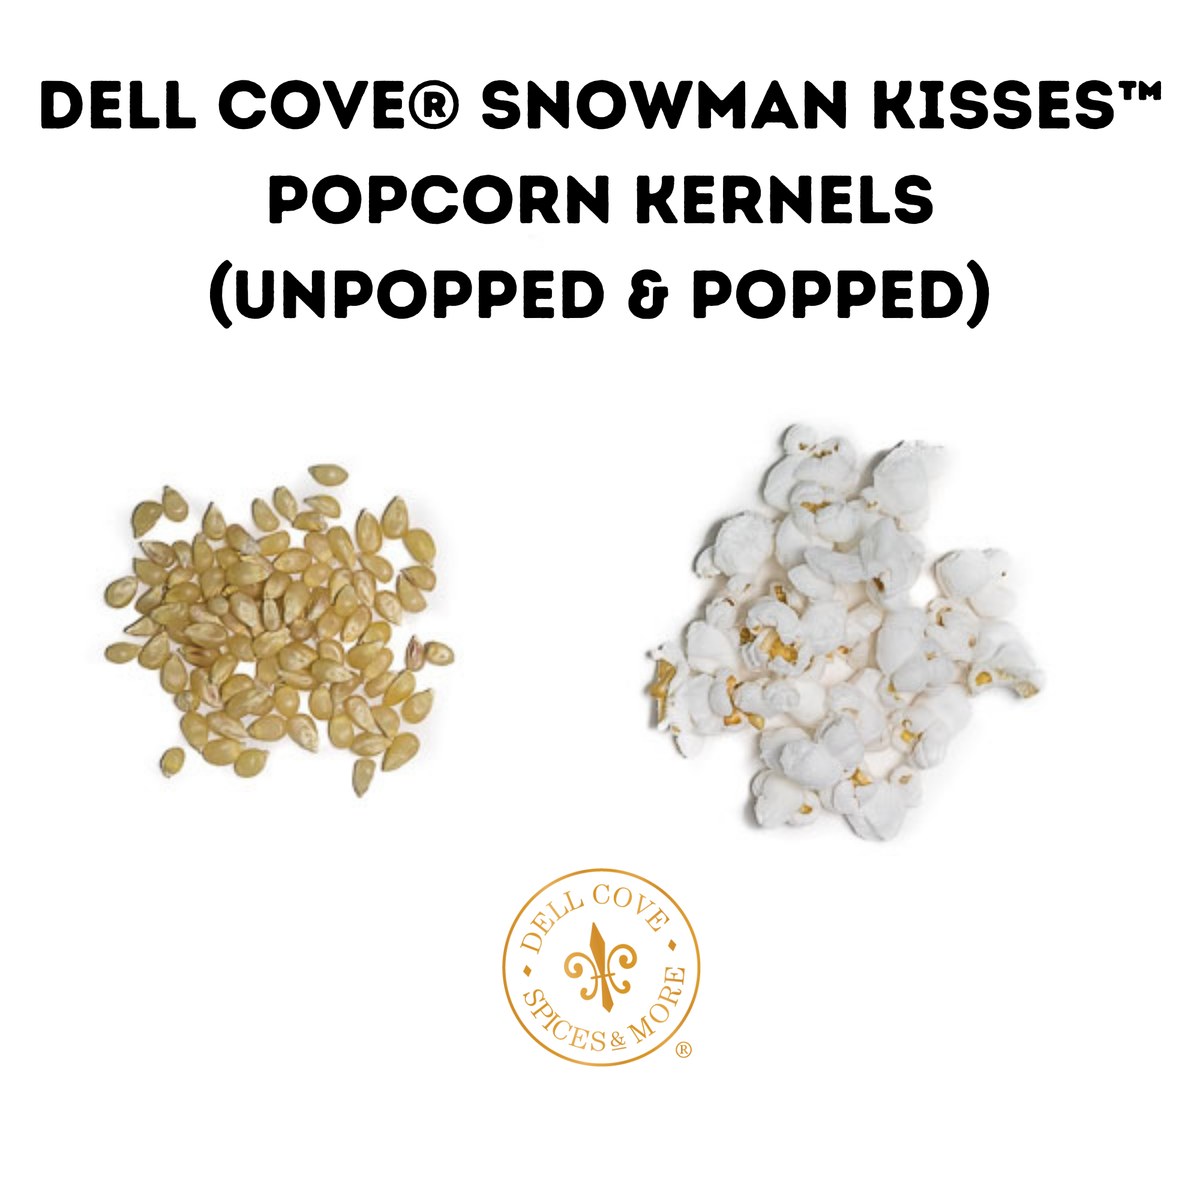 Snowman Kisses Popcorn Kernels